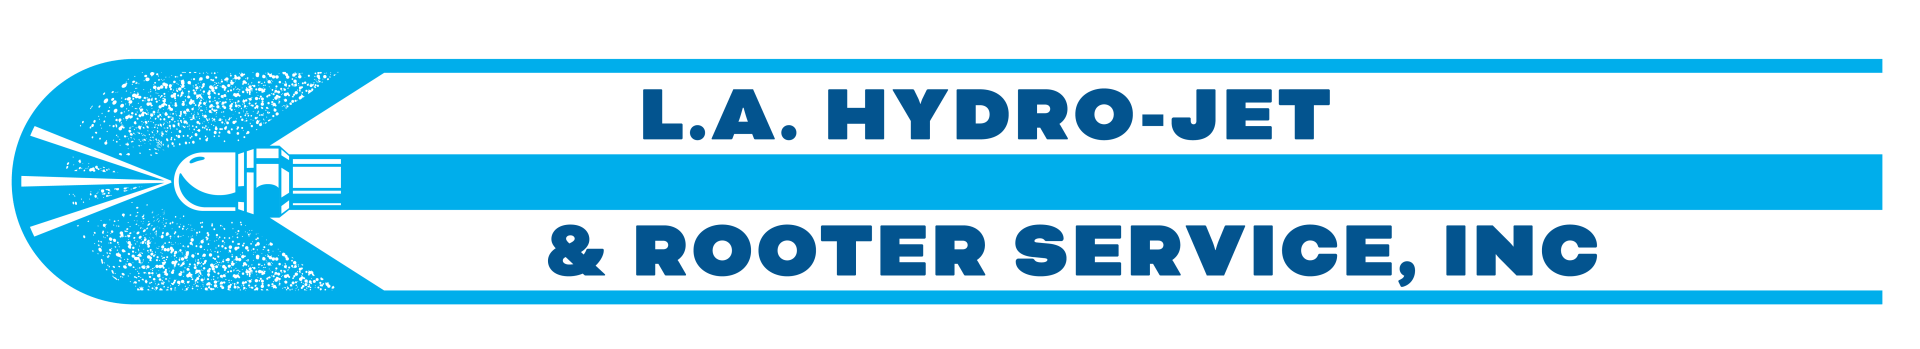 LA Hydro-Jet Logo